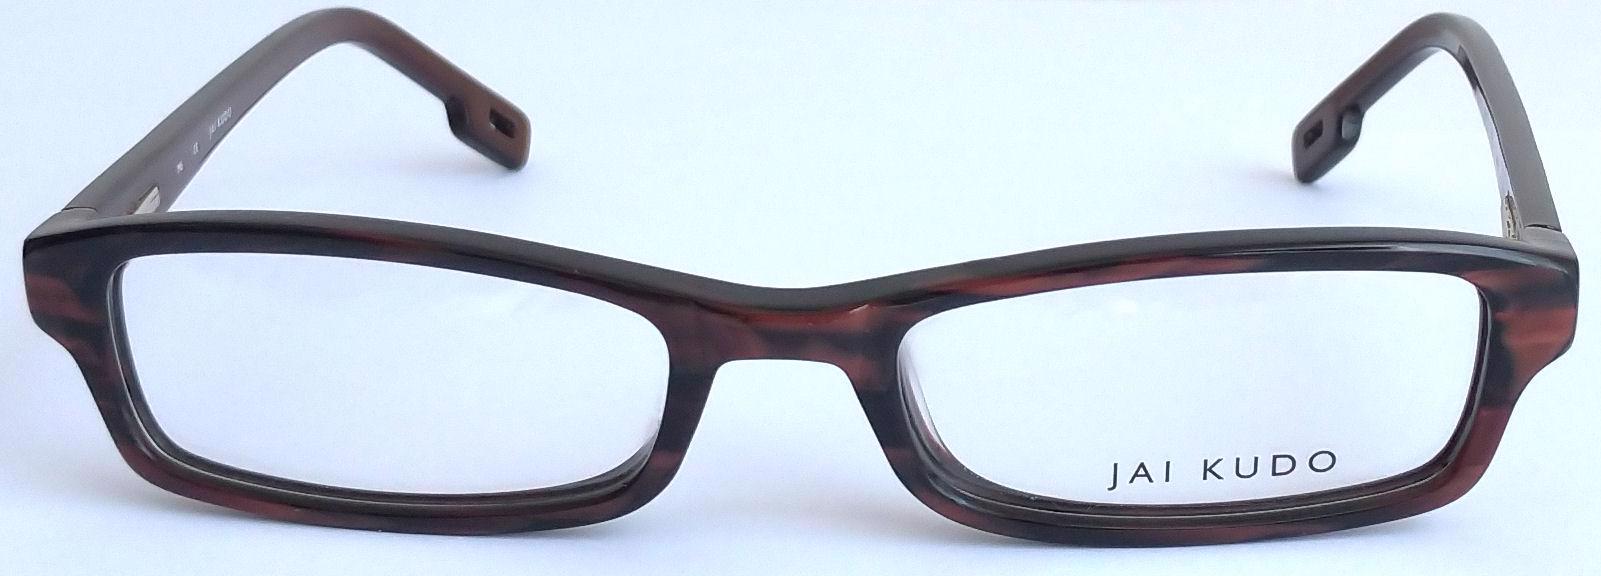 JAI KUDO 1733 P03 dámské brýlové obruby 50-18-135 MOC:2600Kč - foto 3